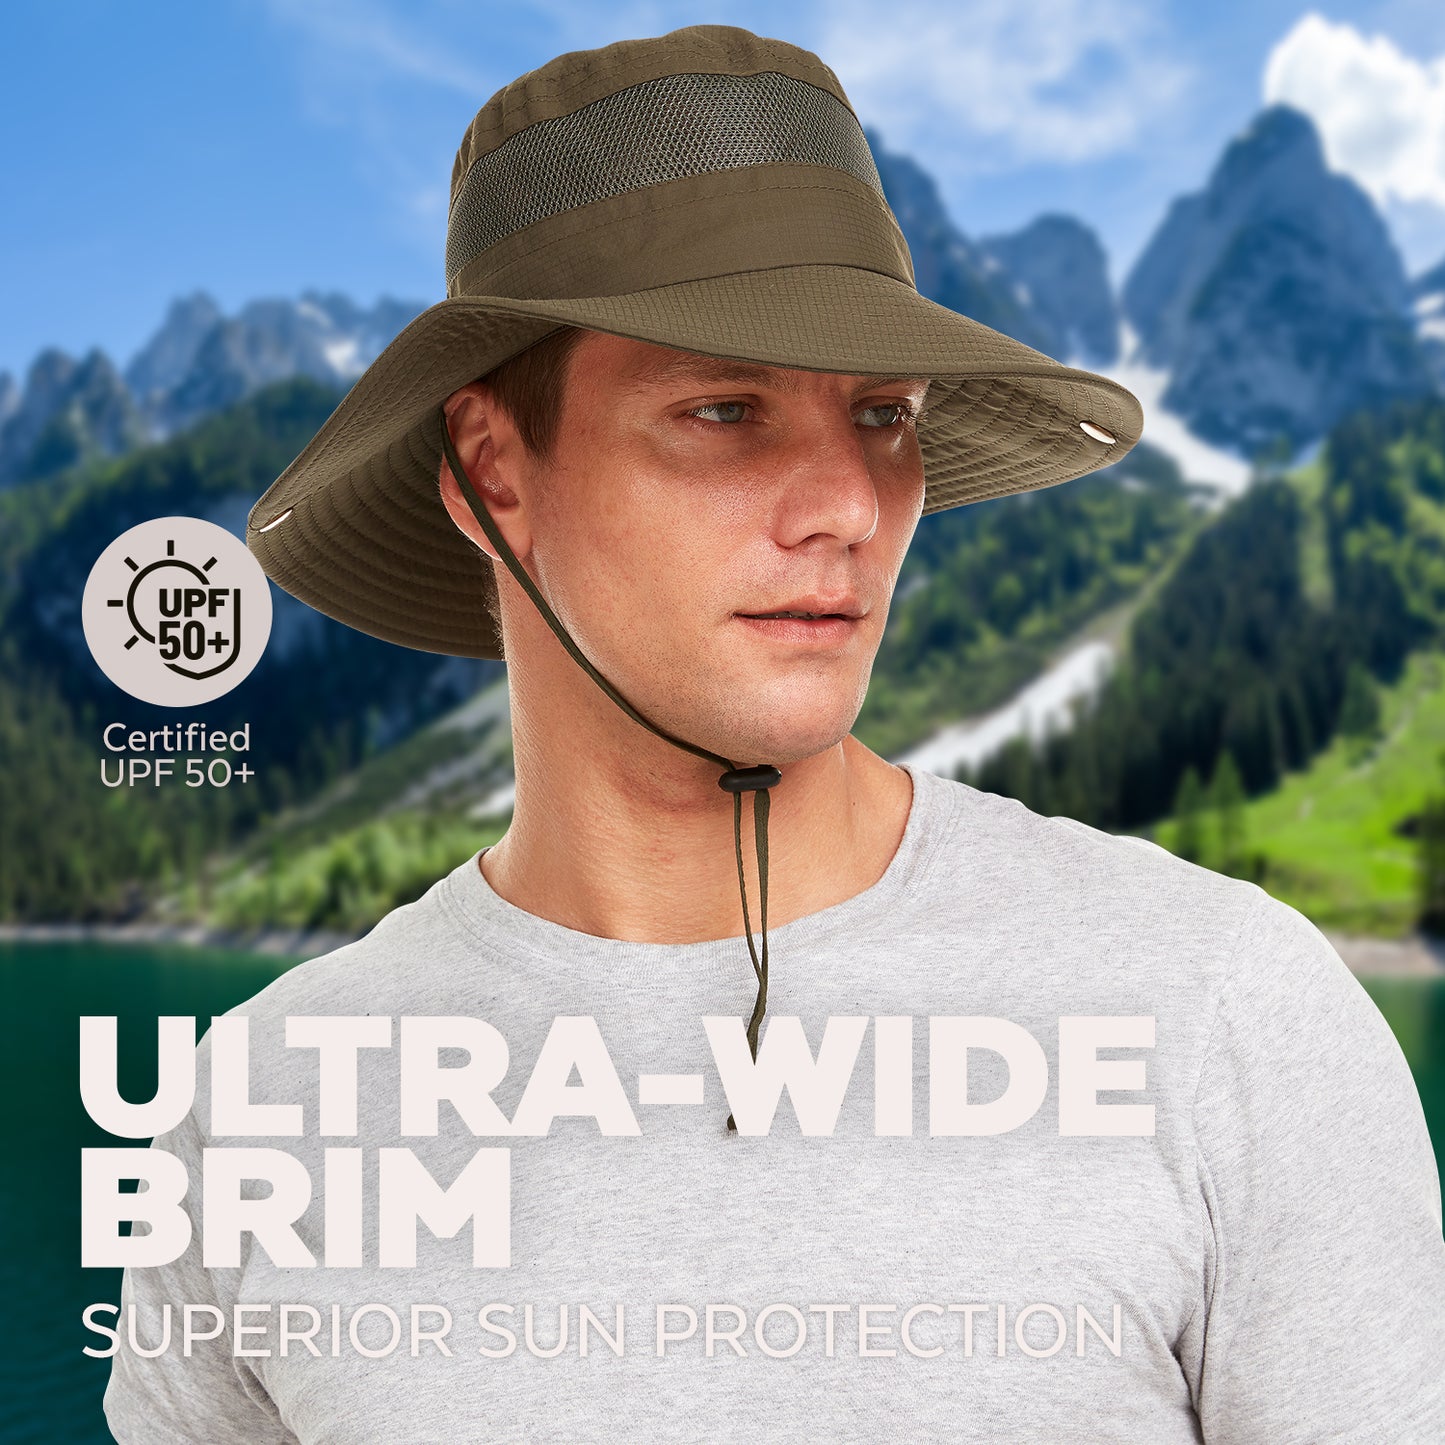 Sun Hat Unisex - Fishing, Hiking, Gardening ETC. UV Protection